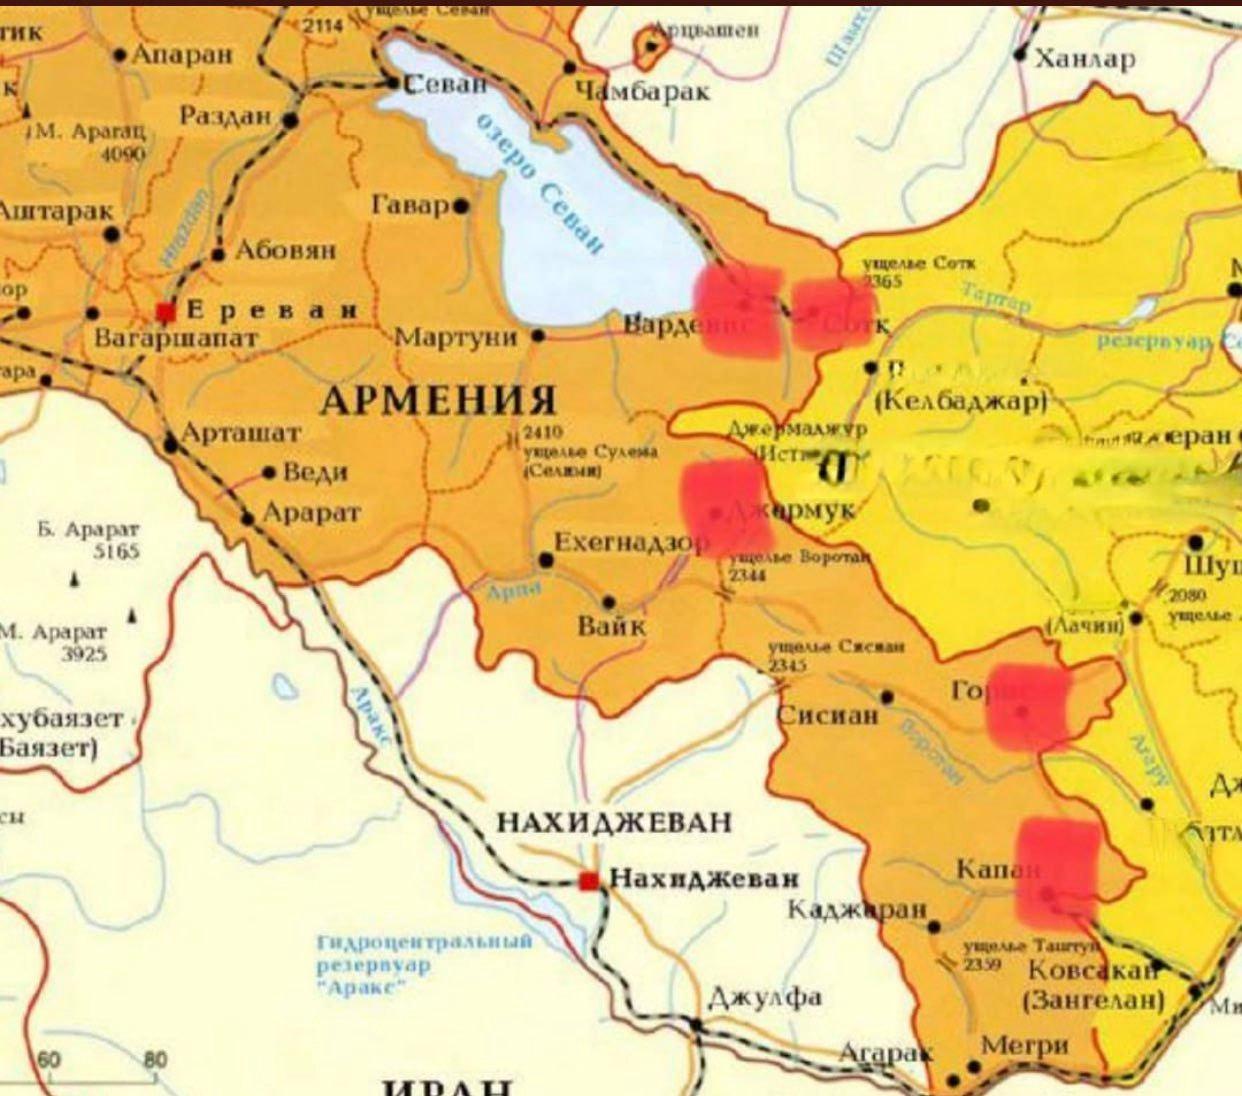 Ermenistan Savunma Bakanlığı, çatışmaların yaşandığı bölgelerin haritasını yayınladı.